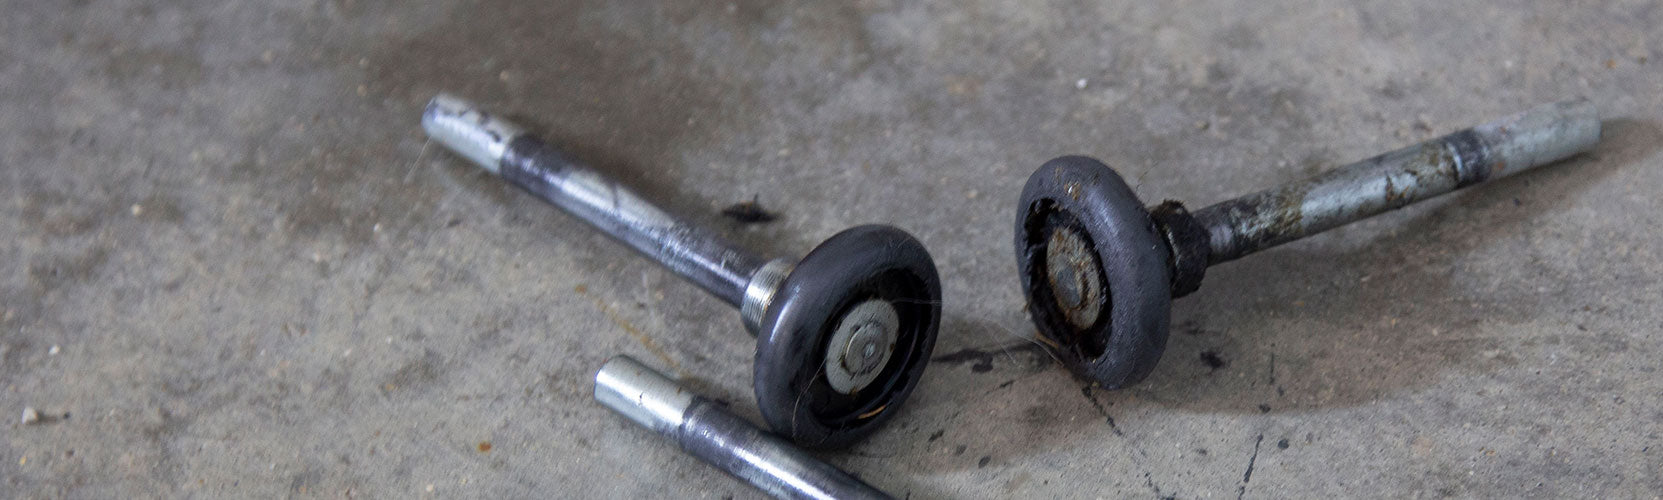 How to Replace Your Garage Door Rollers